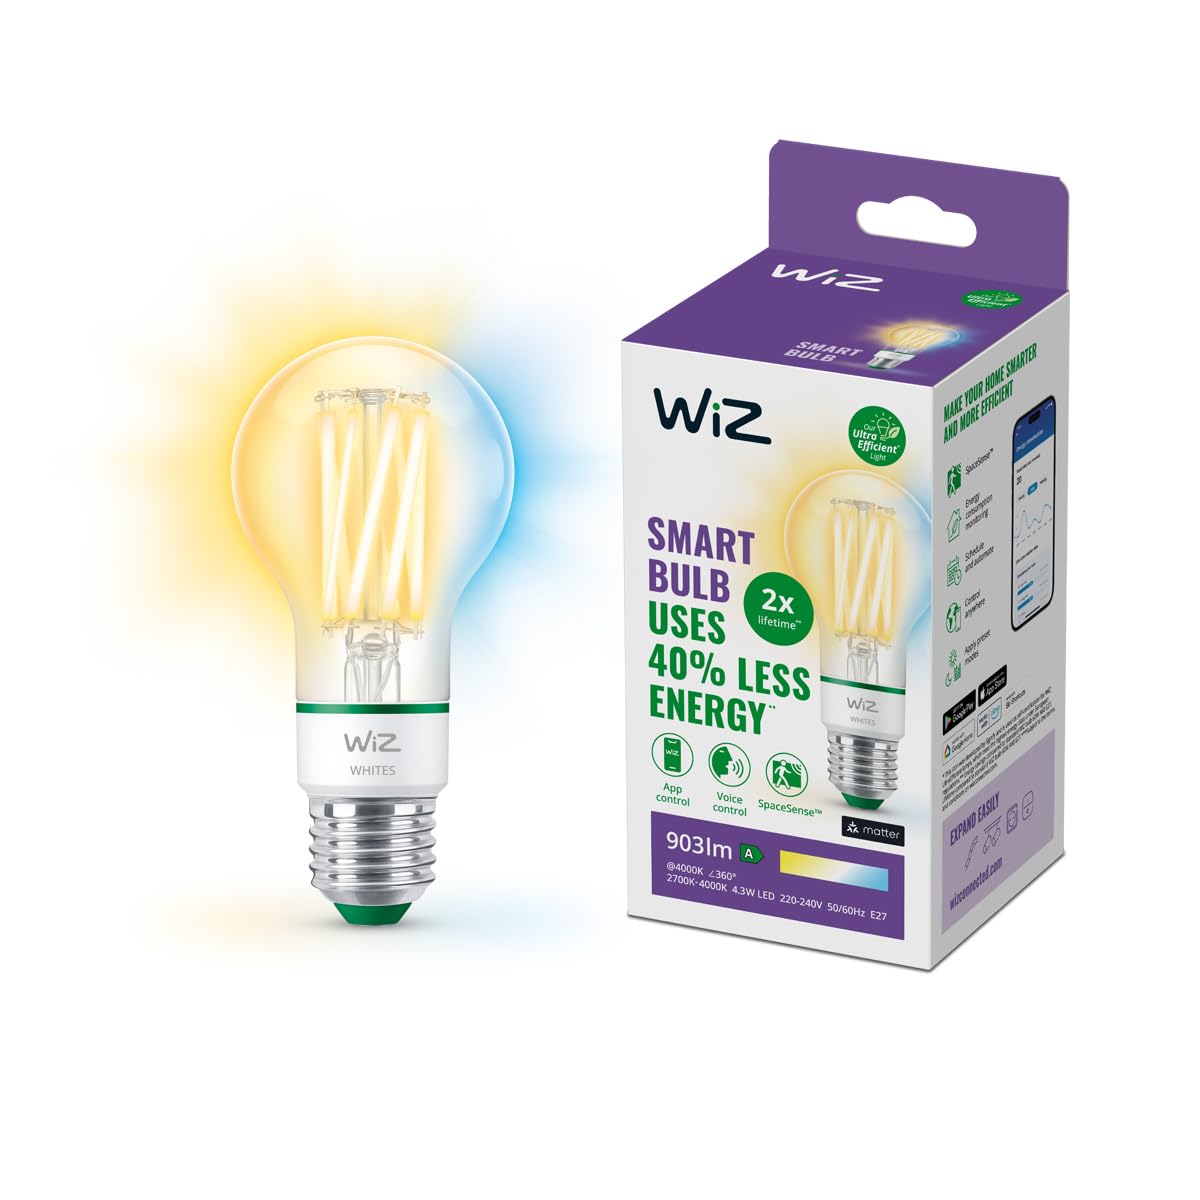 WiZ ultra effiziente smarte LED Lampe, E27, Energieeffizienzklasse A, energiesparend, Automatisierung und smarte Steuerung per App/Stimme über WLAN